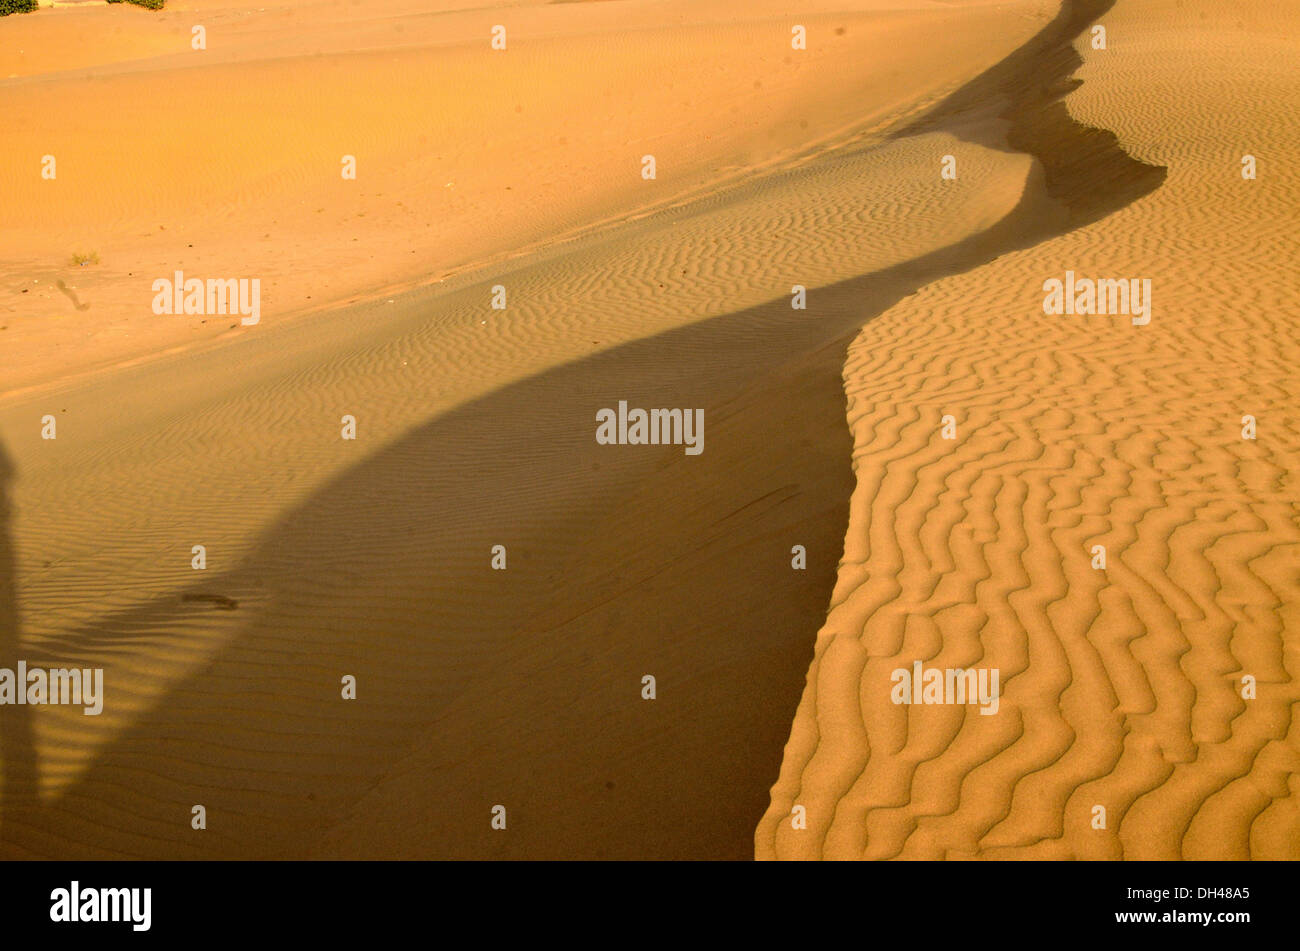 Dunes de sable du désert de courbe et l'ombre du Rajasthan Inde Asie Banque D'Images